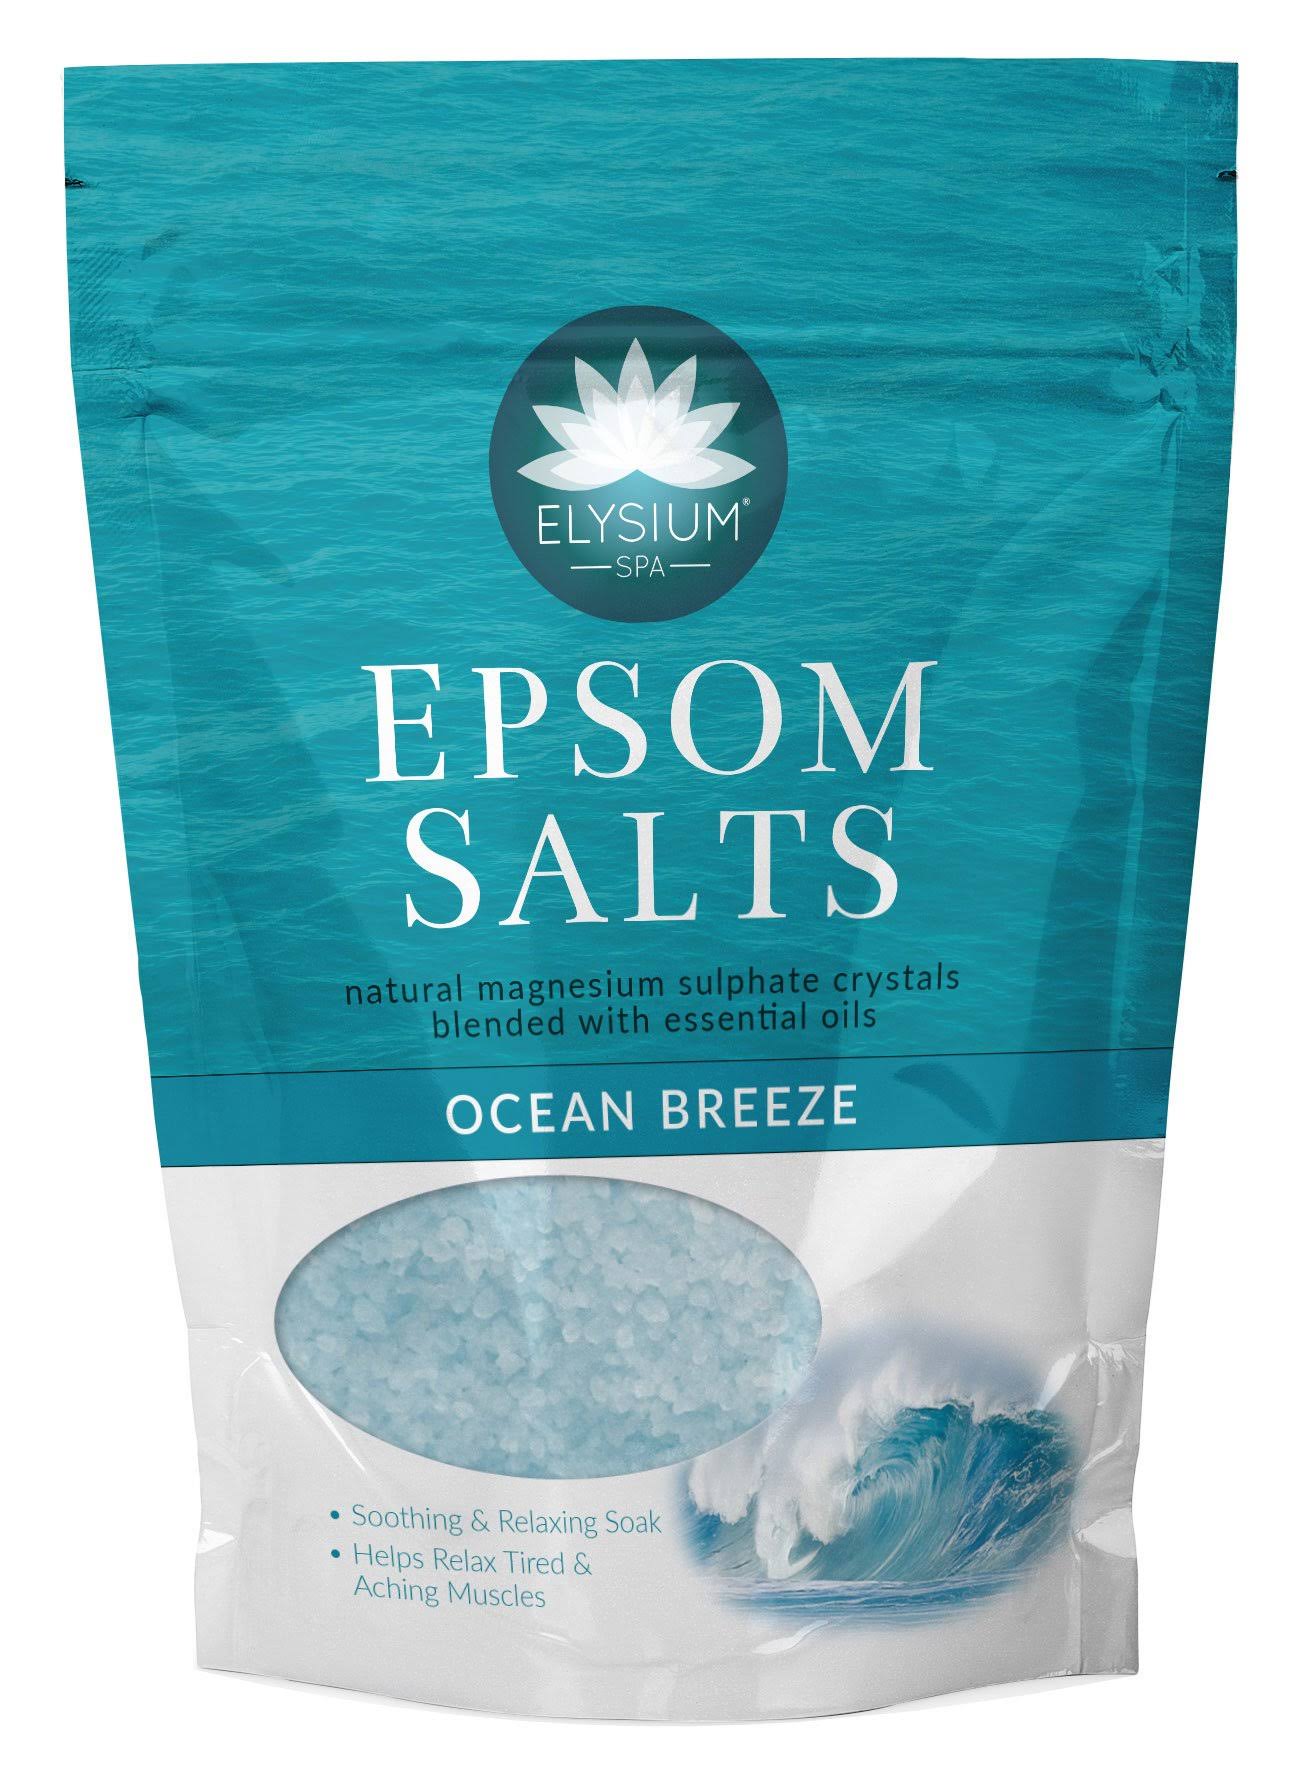 Elysium Spa Epsom Bath Salts Ocean Breeze 450g